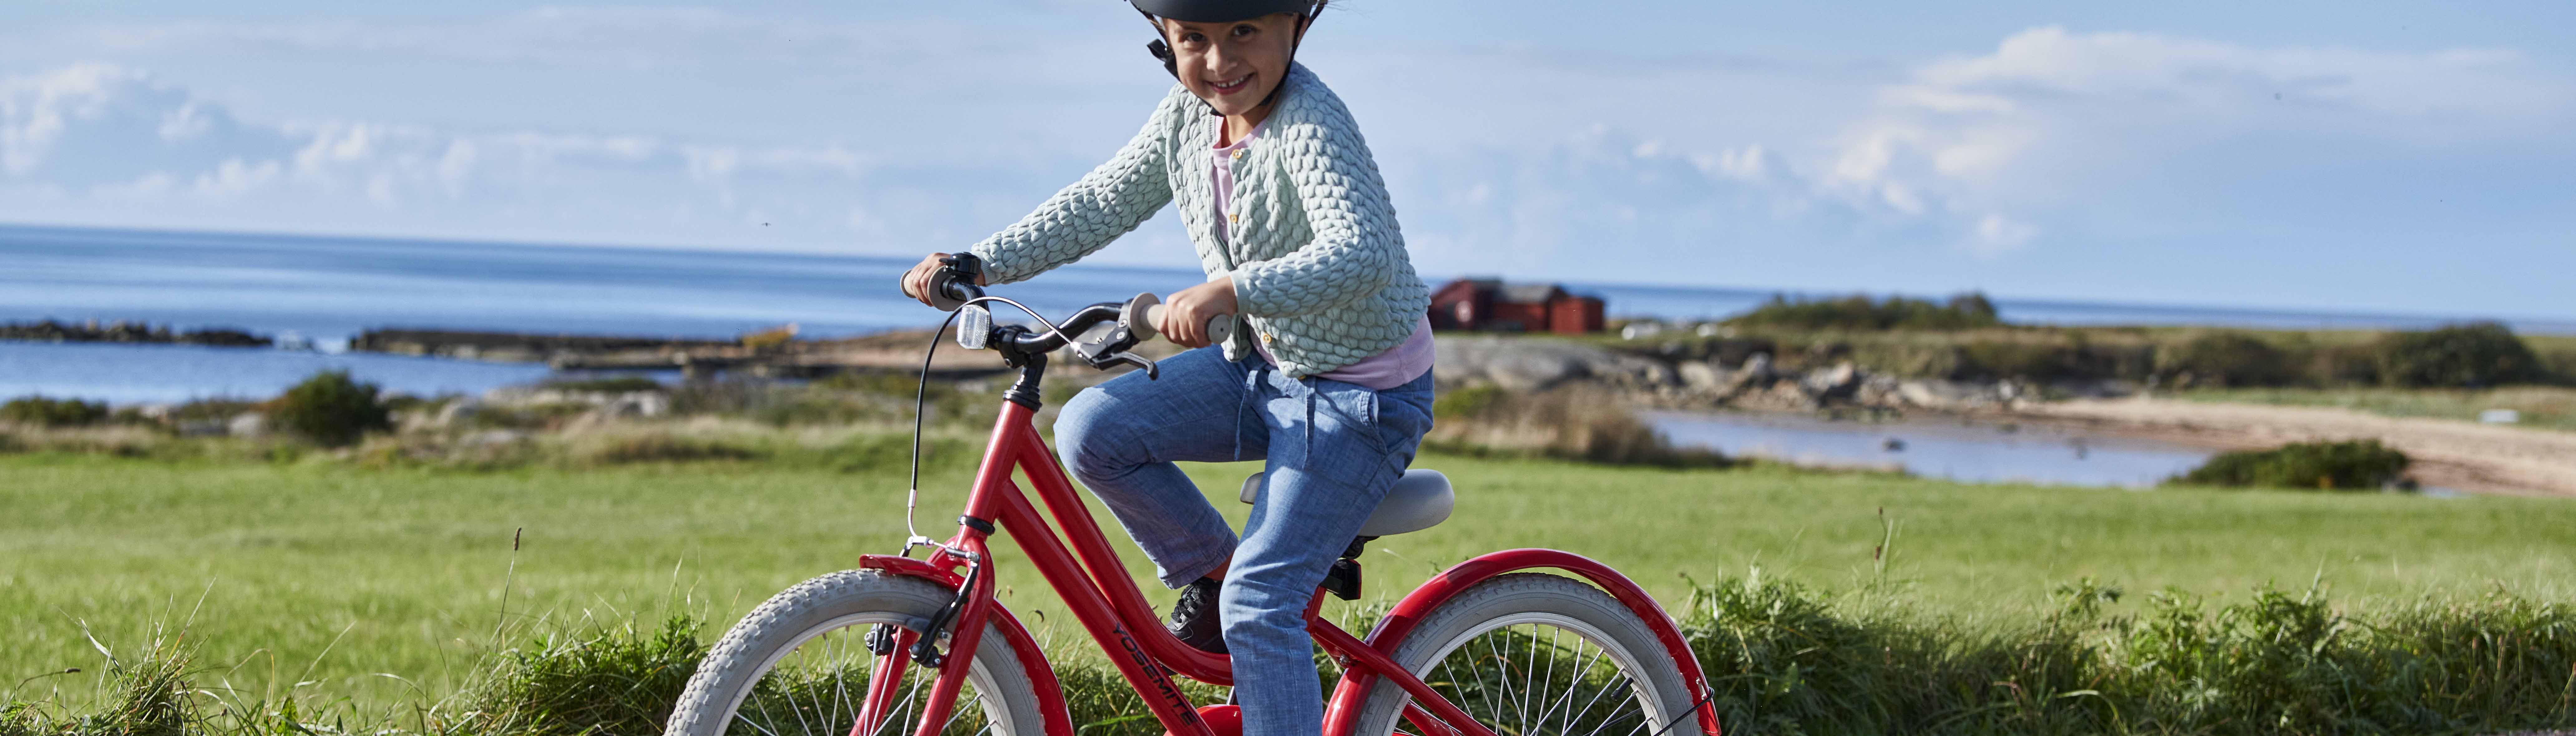 Børnecykel - Guide til køb af børnecykler